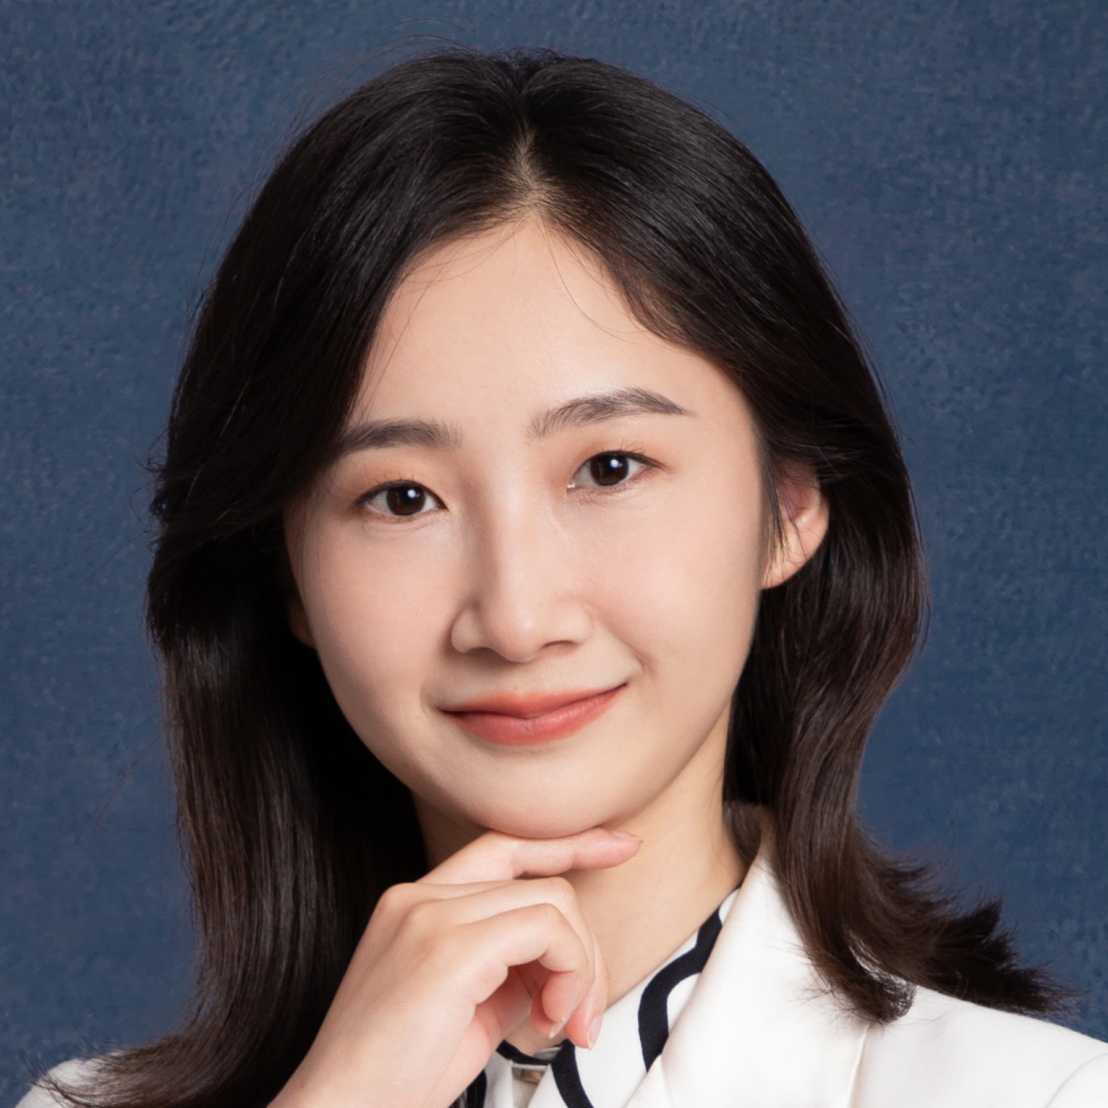 Dr. Xiaoyu Zhang